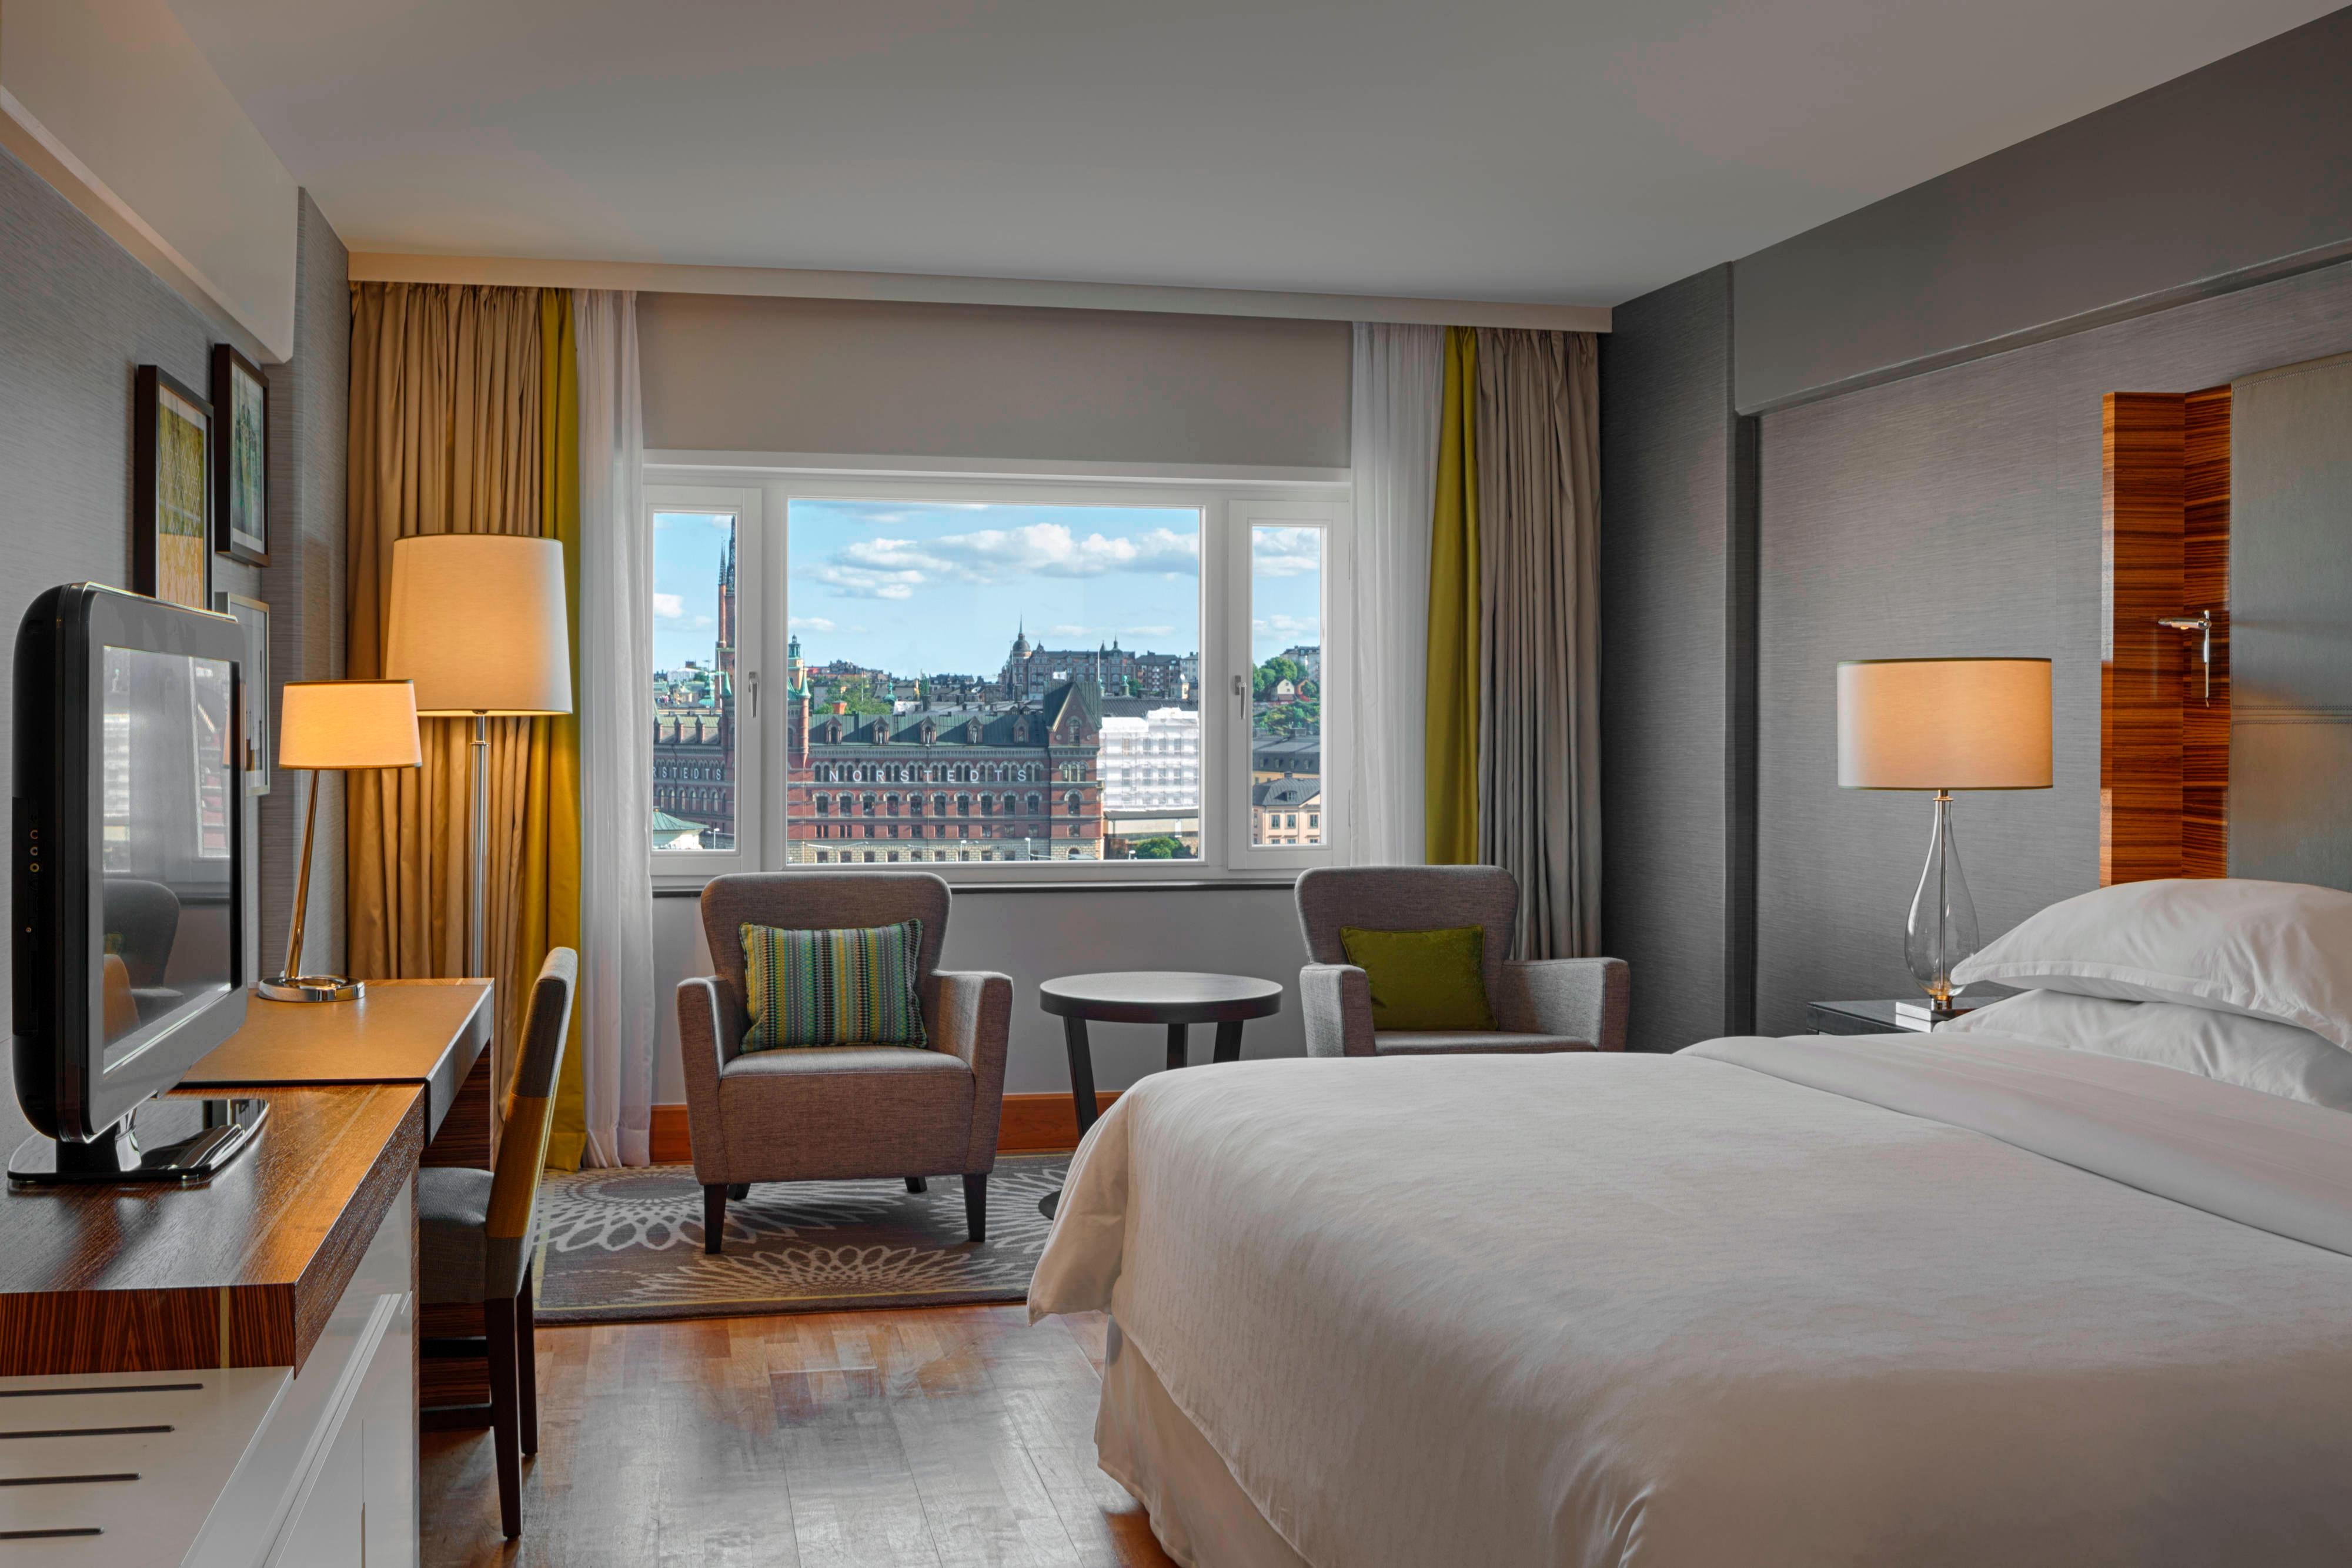 Superior view перевод. Sheraton Stockholm Hotel. Самый дорогой отель в Стокгольме. Grand Hôtel Stockholm вид из окна. Самый крутой отель Швеции.